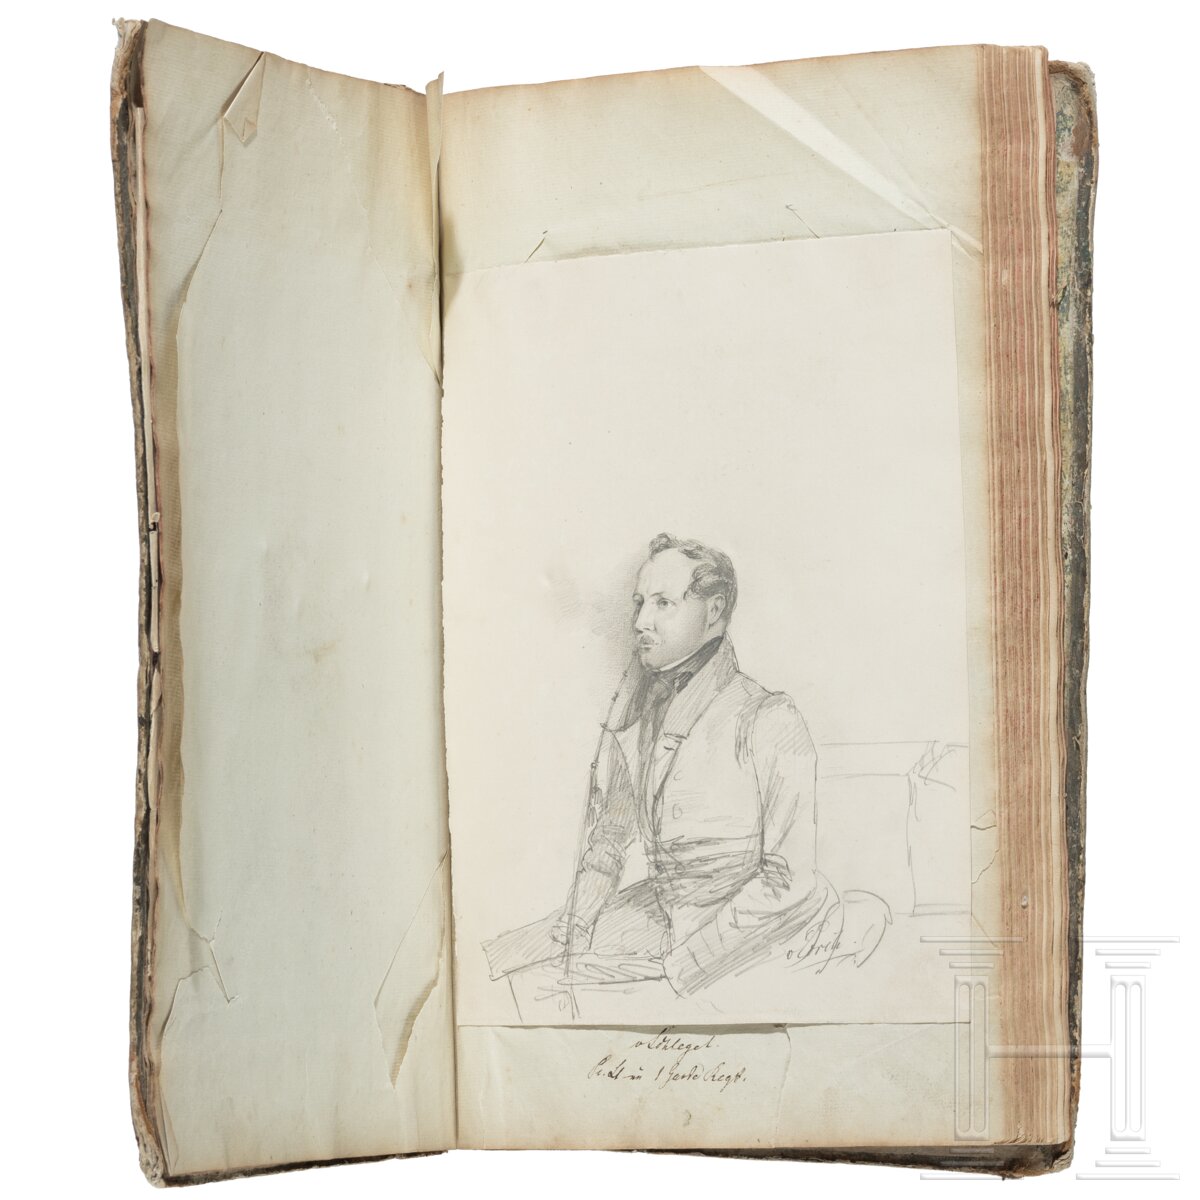 Album mit handgezeichneten Offiziersportraits, um 1830 - 1850 - Image 10 of 10